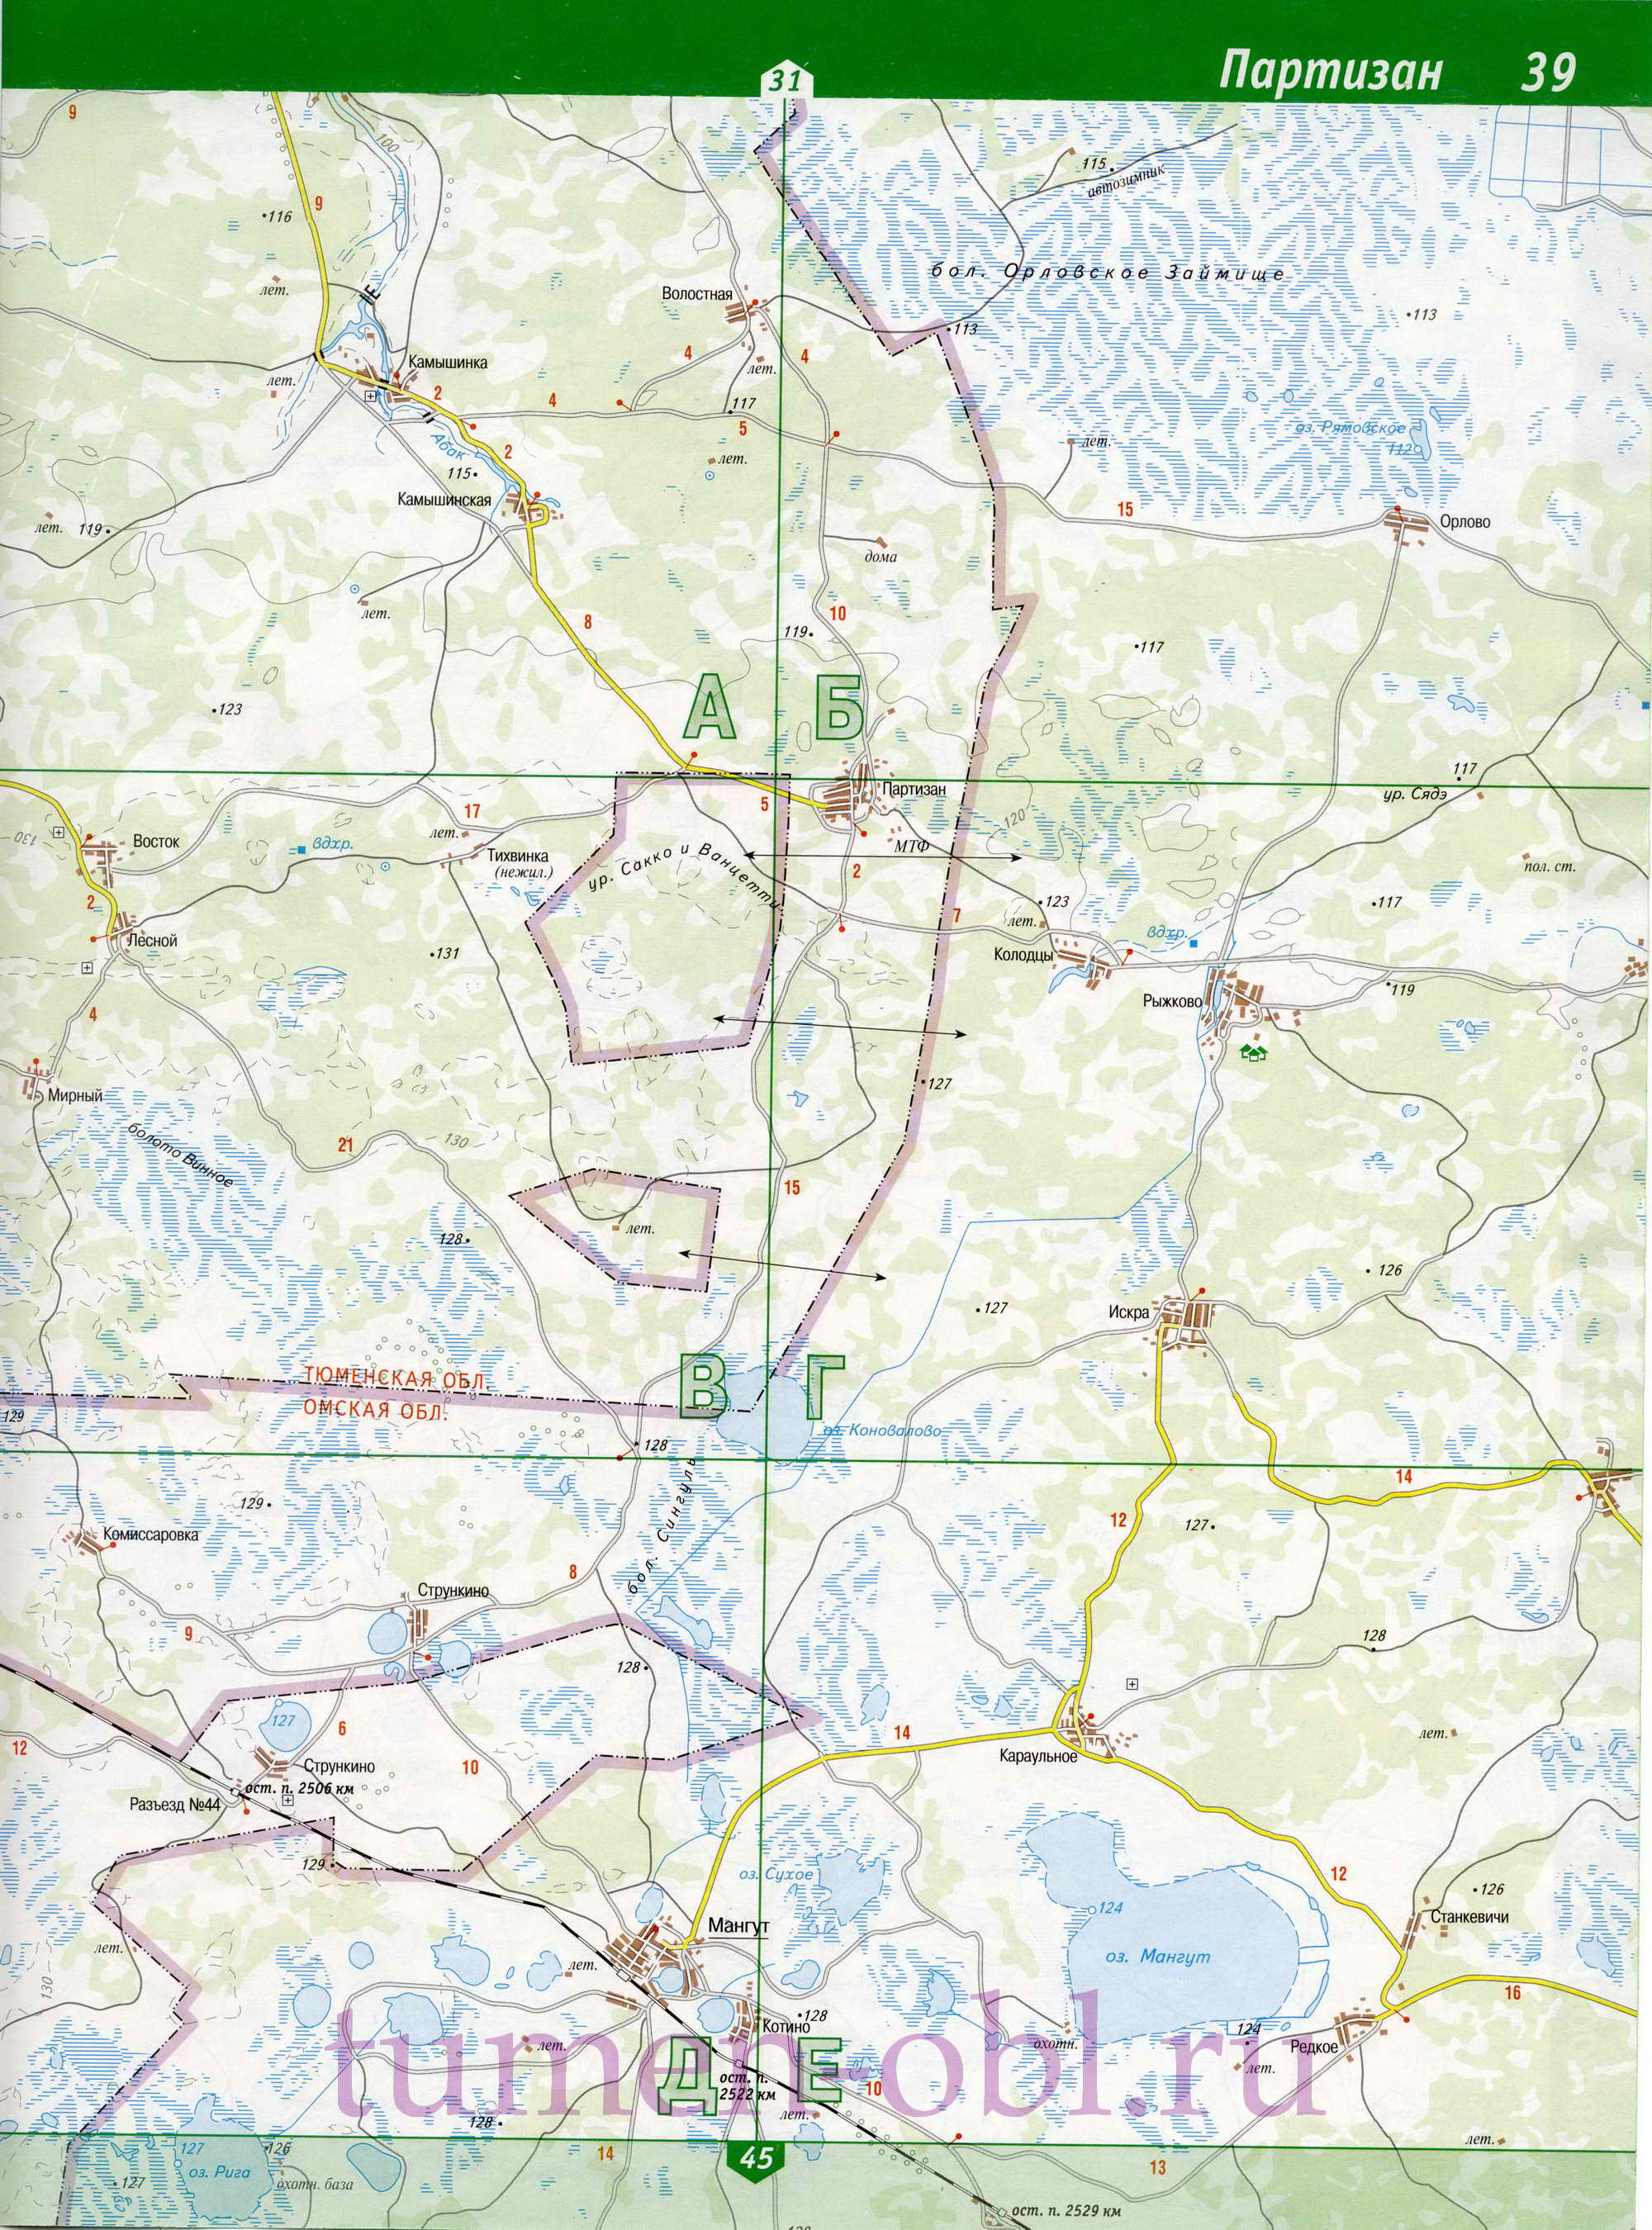 Карта Сладковского района Тюменской области. Большая подробная карта - Сладковский район, B0 - 